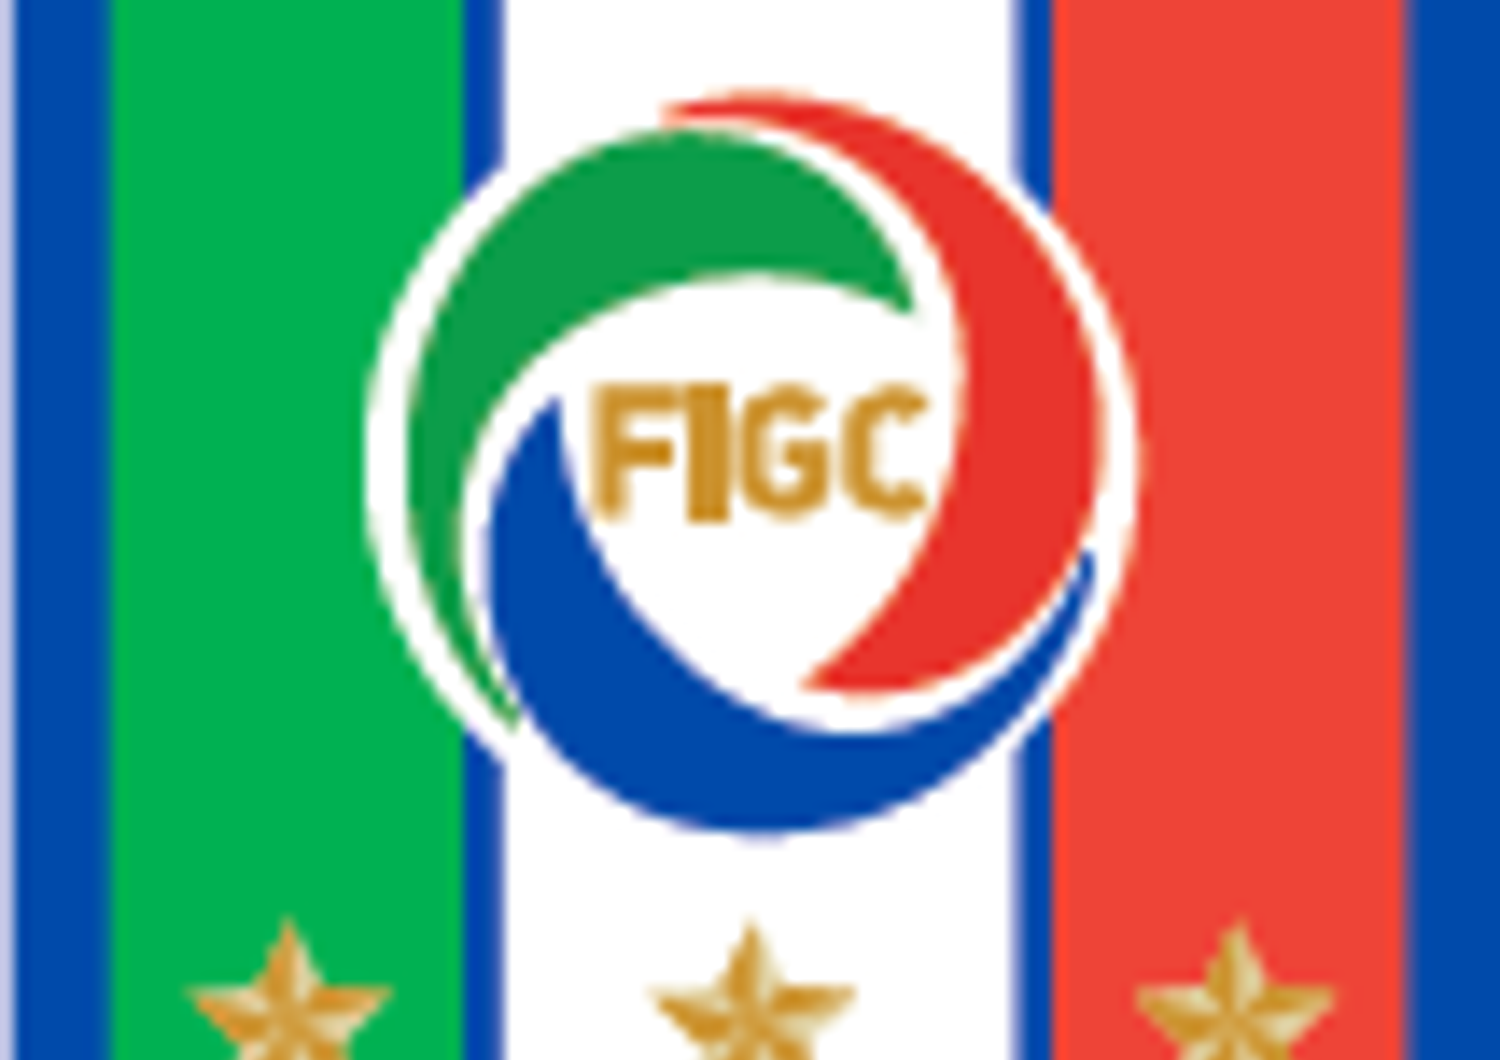 &nbsp;Logo nazionale azzurra Italia Figc Eni